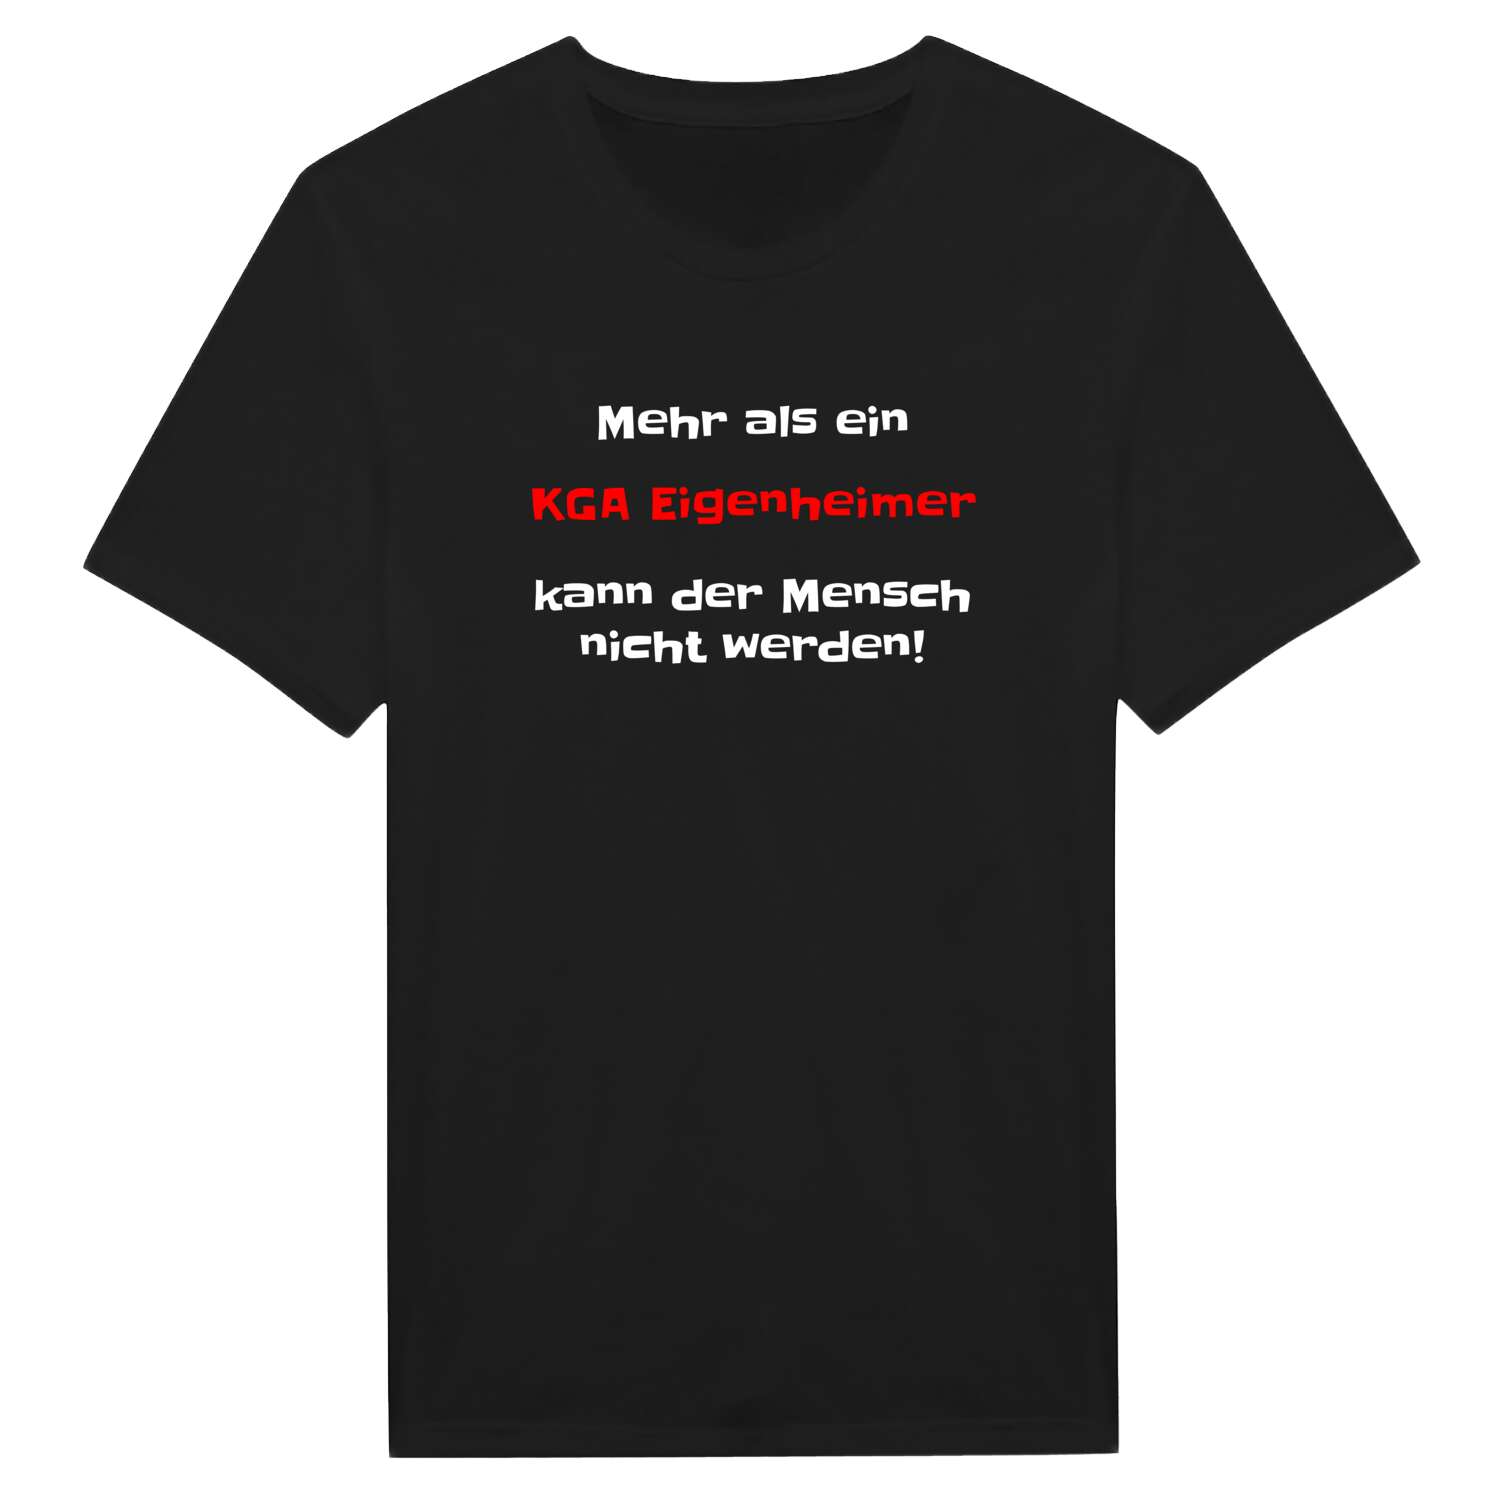 KGA Eigenheim T-Shirt »Mehr als ein«